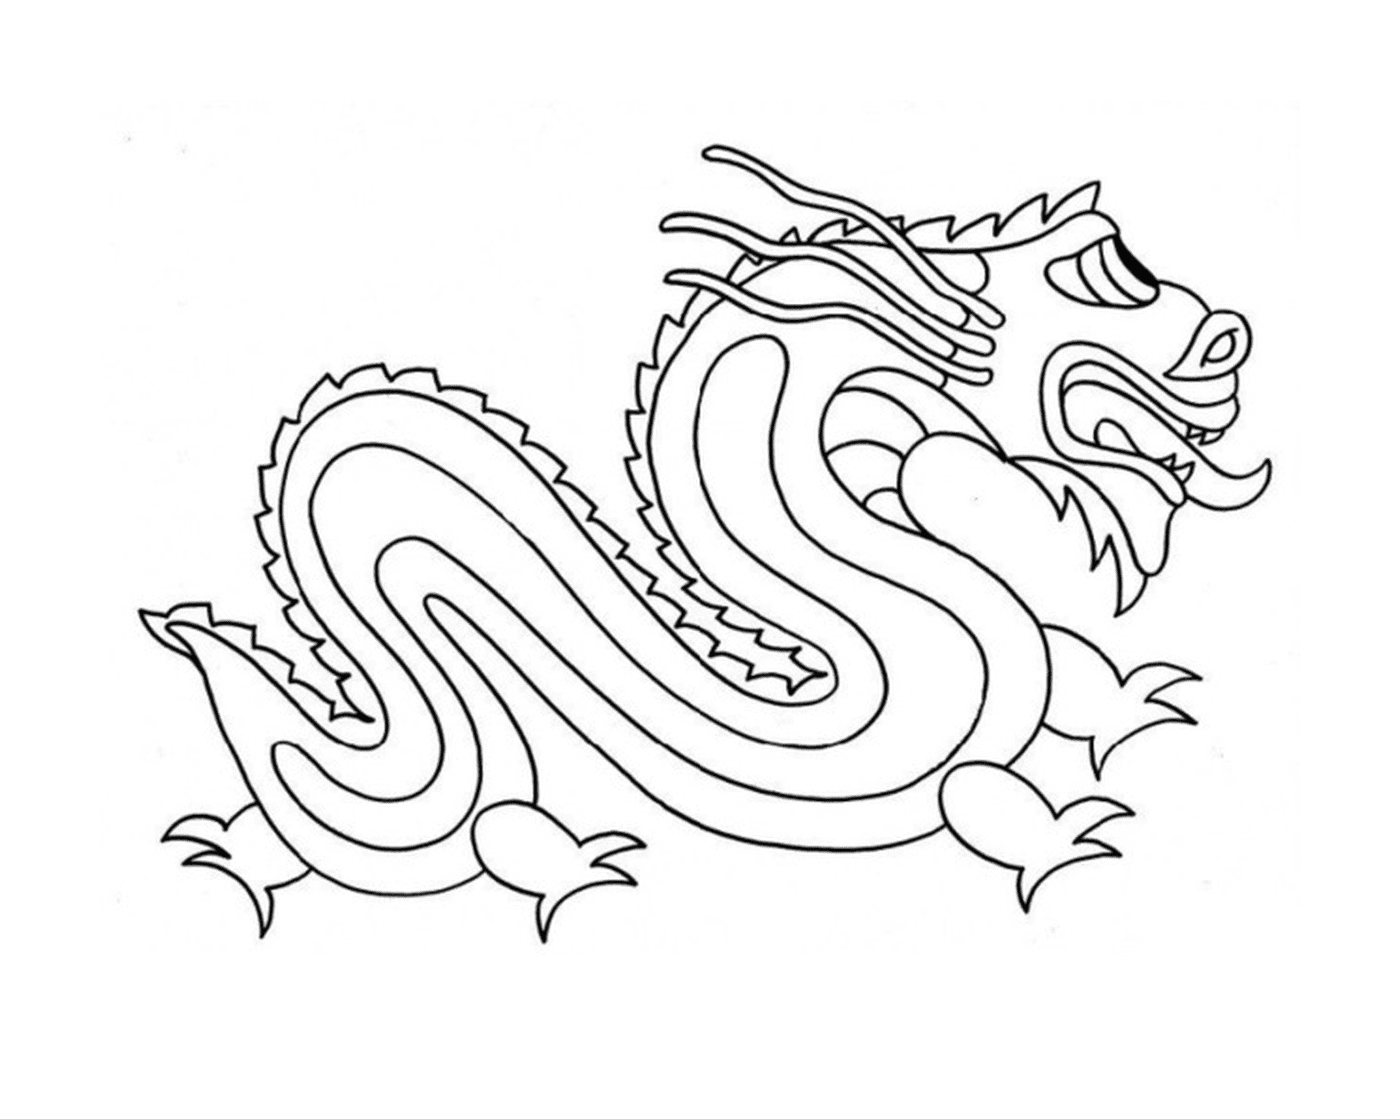  Dragón chino sencillo y fácil 